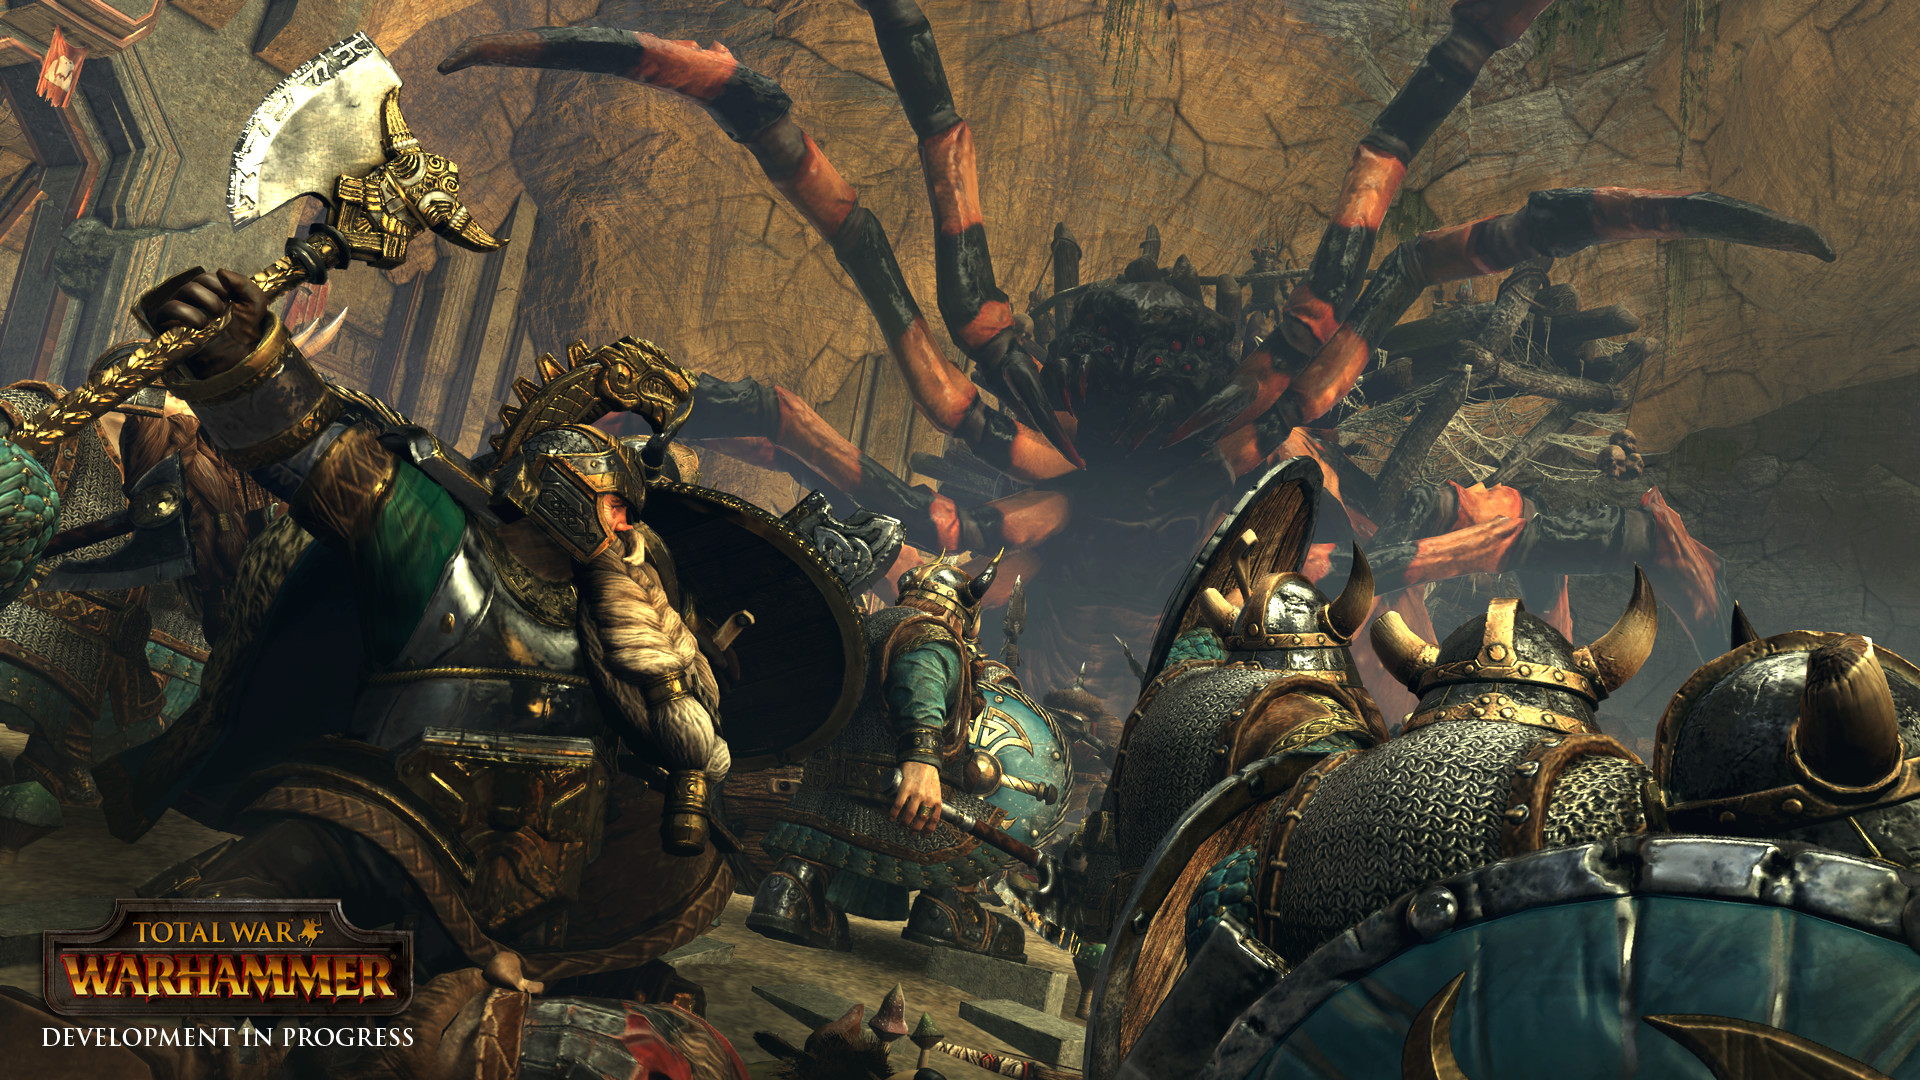 Total War countdown op website hint naar nieuwe game, mogelijke Warhammer-uitbreiding